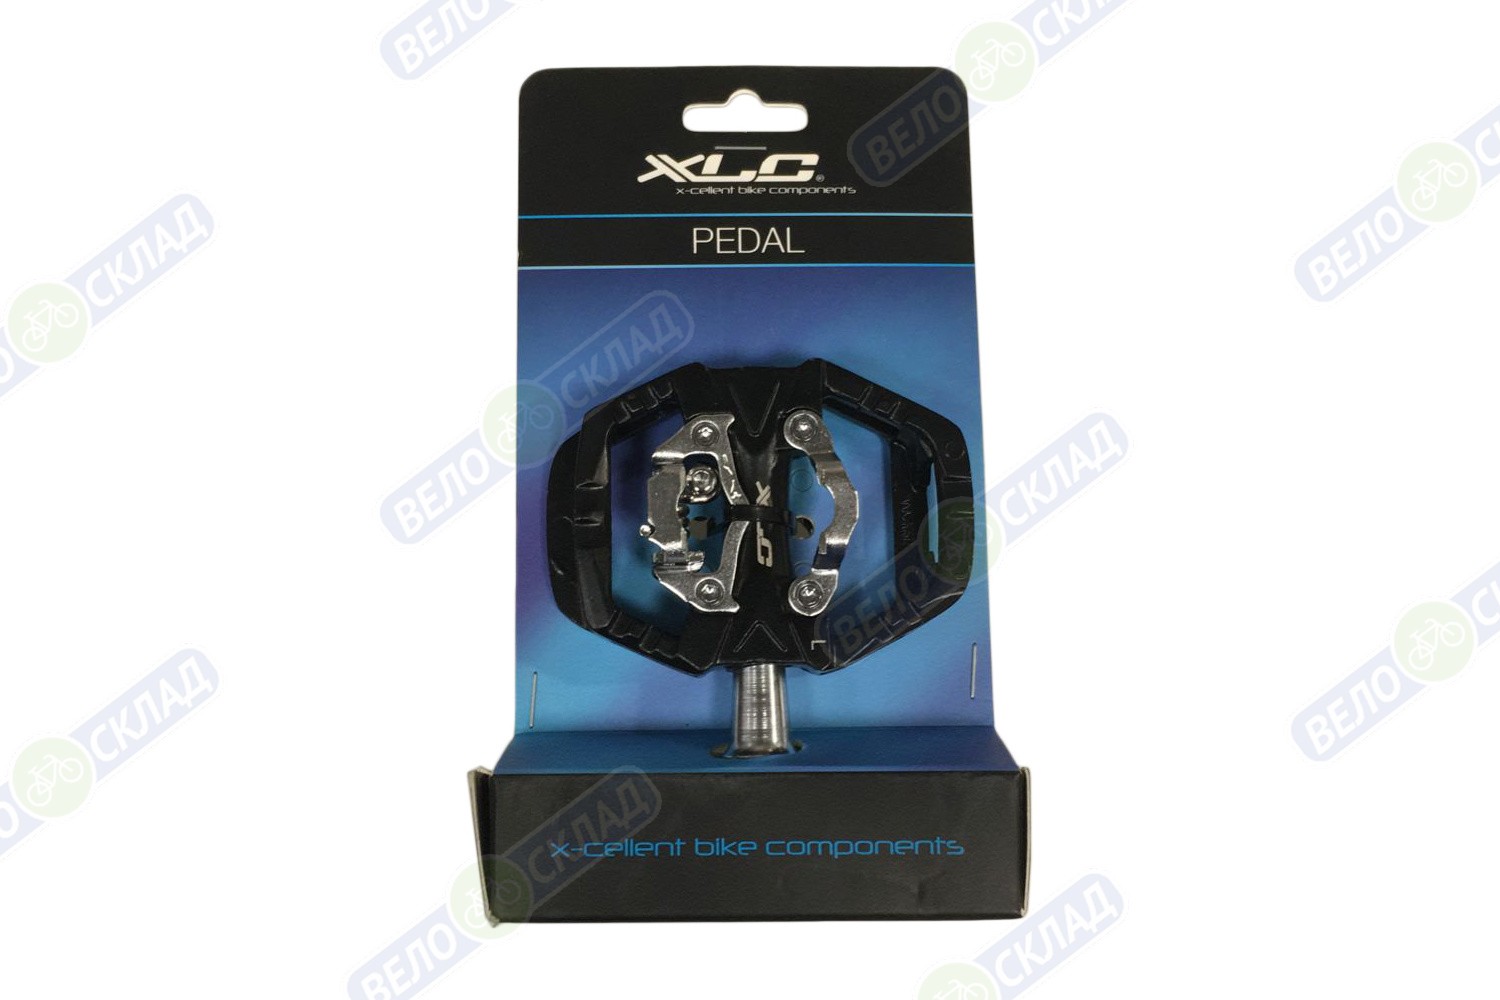 фото Xlc педали xlc system pedal pd-s14, цвет черный